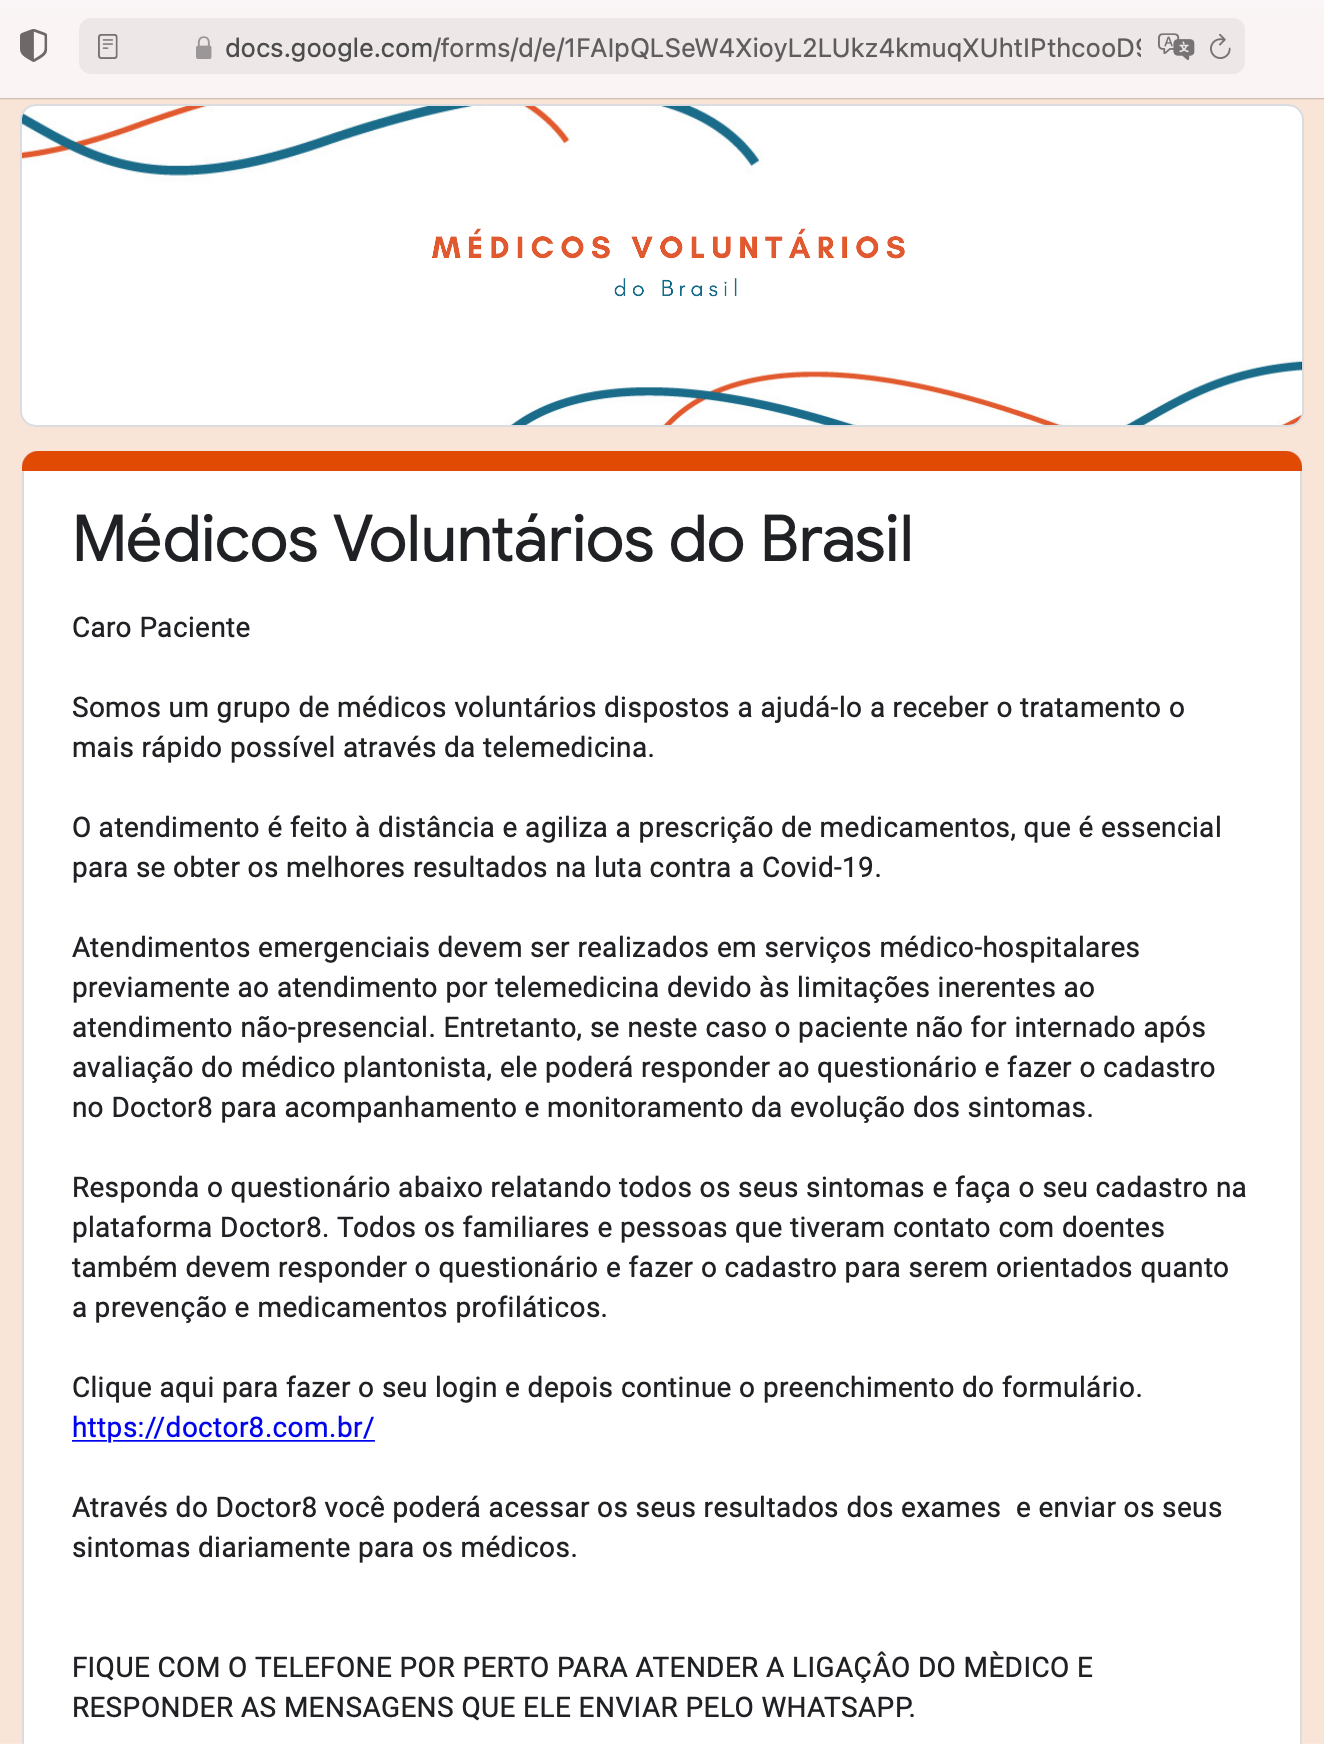 medicos-voluntarios